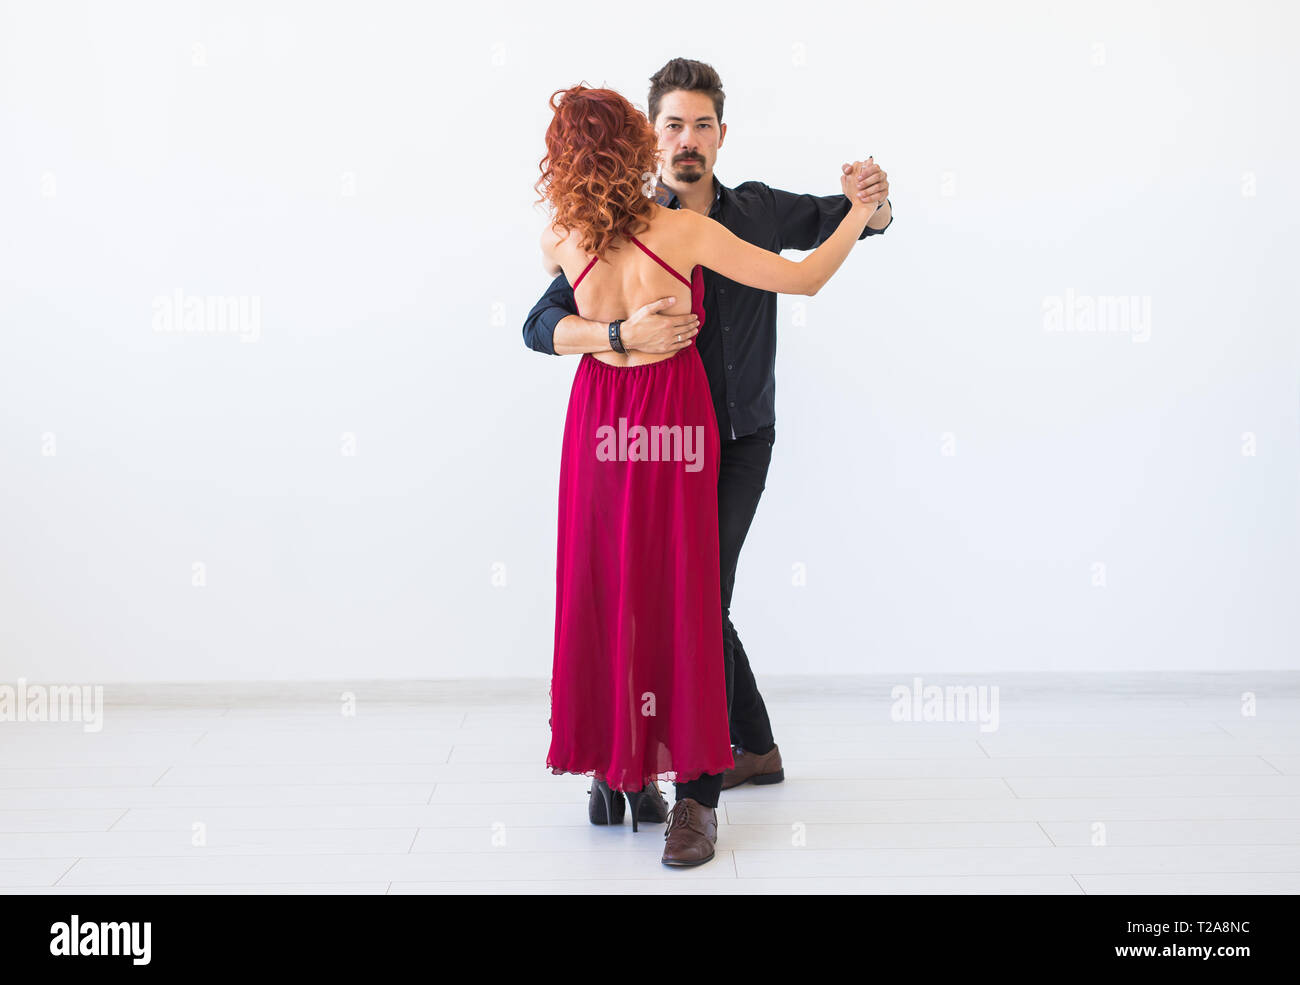 Romantique, danse sociale, personnes concept - couple dancing la salsa ou kizomba tango ou sur fond blanc. Banque D'Images